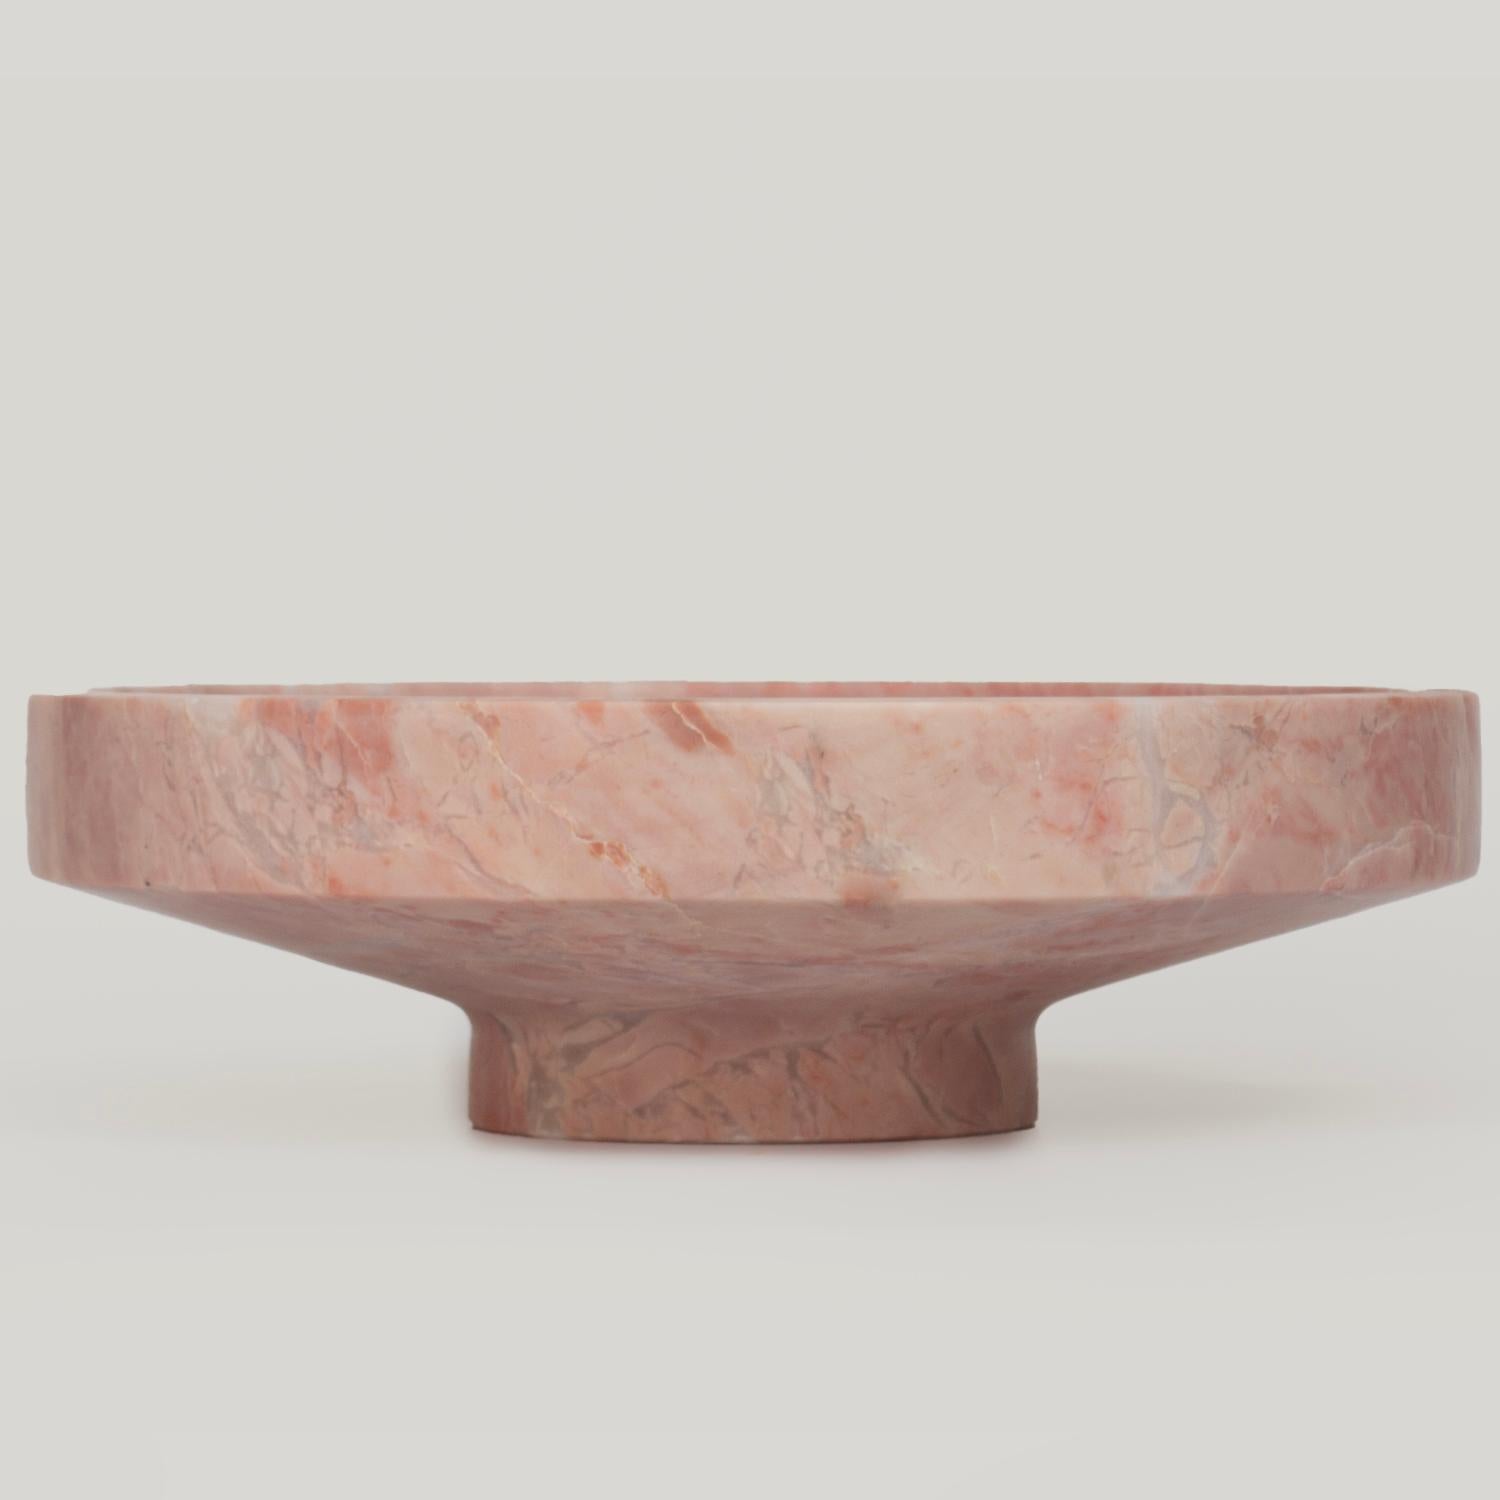 Atemberaubend, ästhetisch, zeitlos sind die Worte, mit denen man diesen eleganten und modernen schmalen rosa Marmor beschreiben kann.  Schale aus Kiwano. Unsere fachmännisch von Hand gefertigten und bearbeiteten Travertinschalen sind eine Studie in